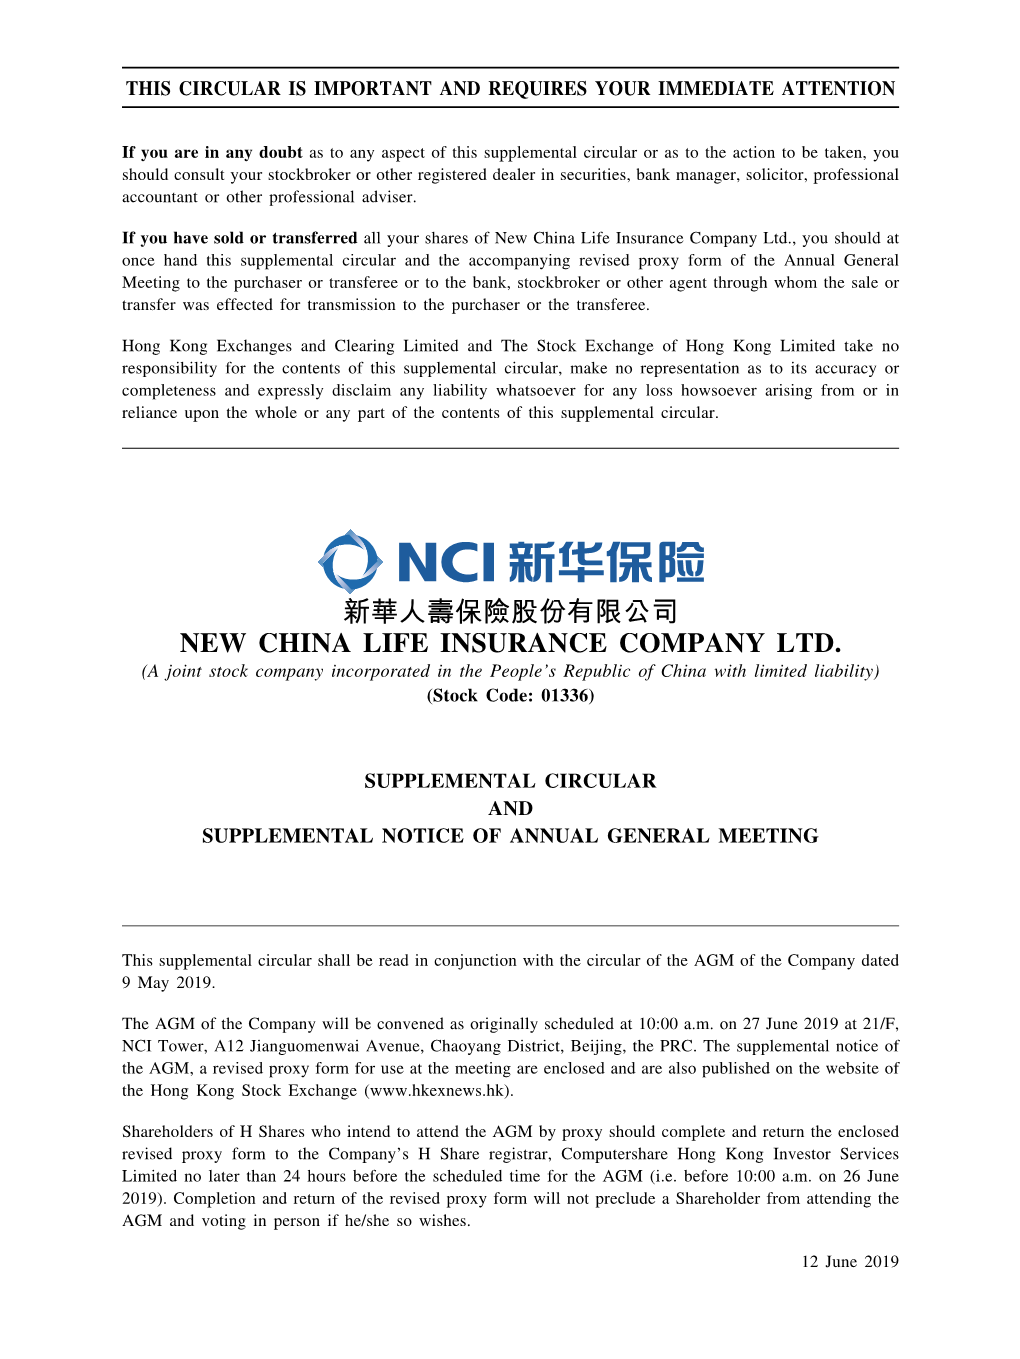 New China Life Insurance Company Ltd